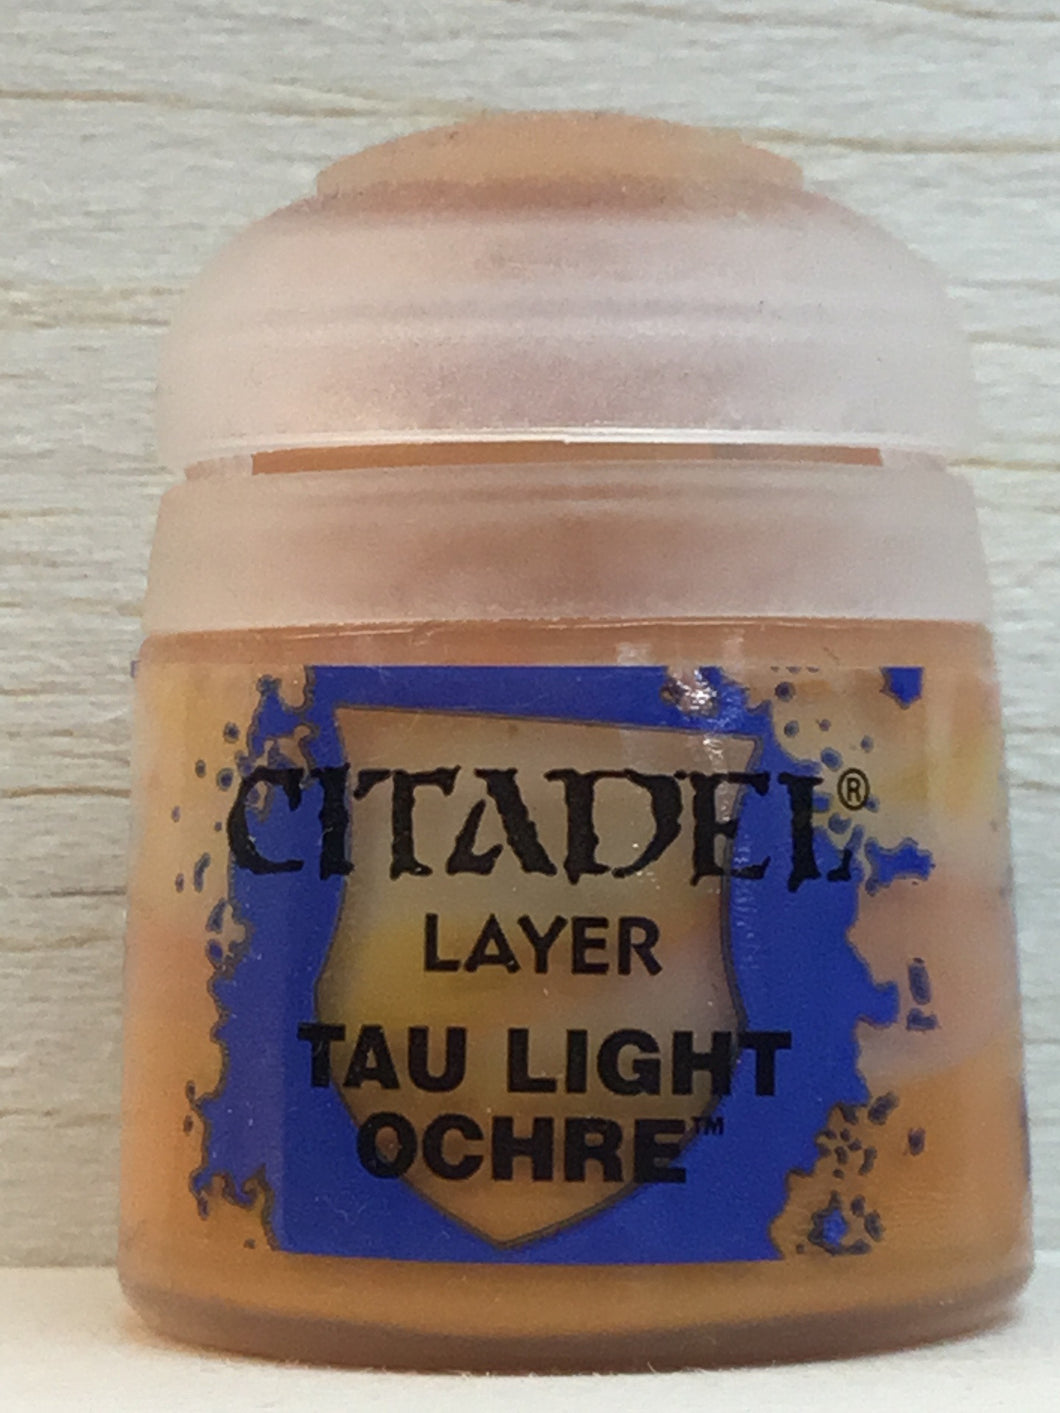 Citadel Layer - Tau Light Ochre